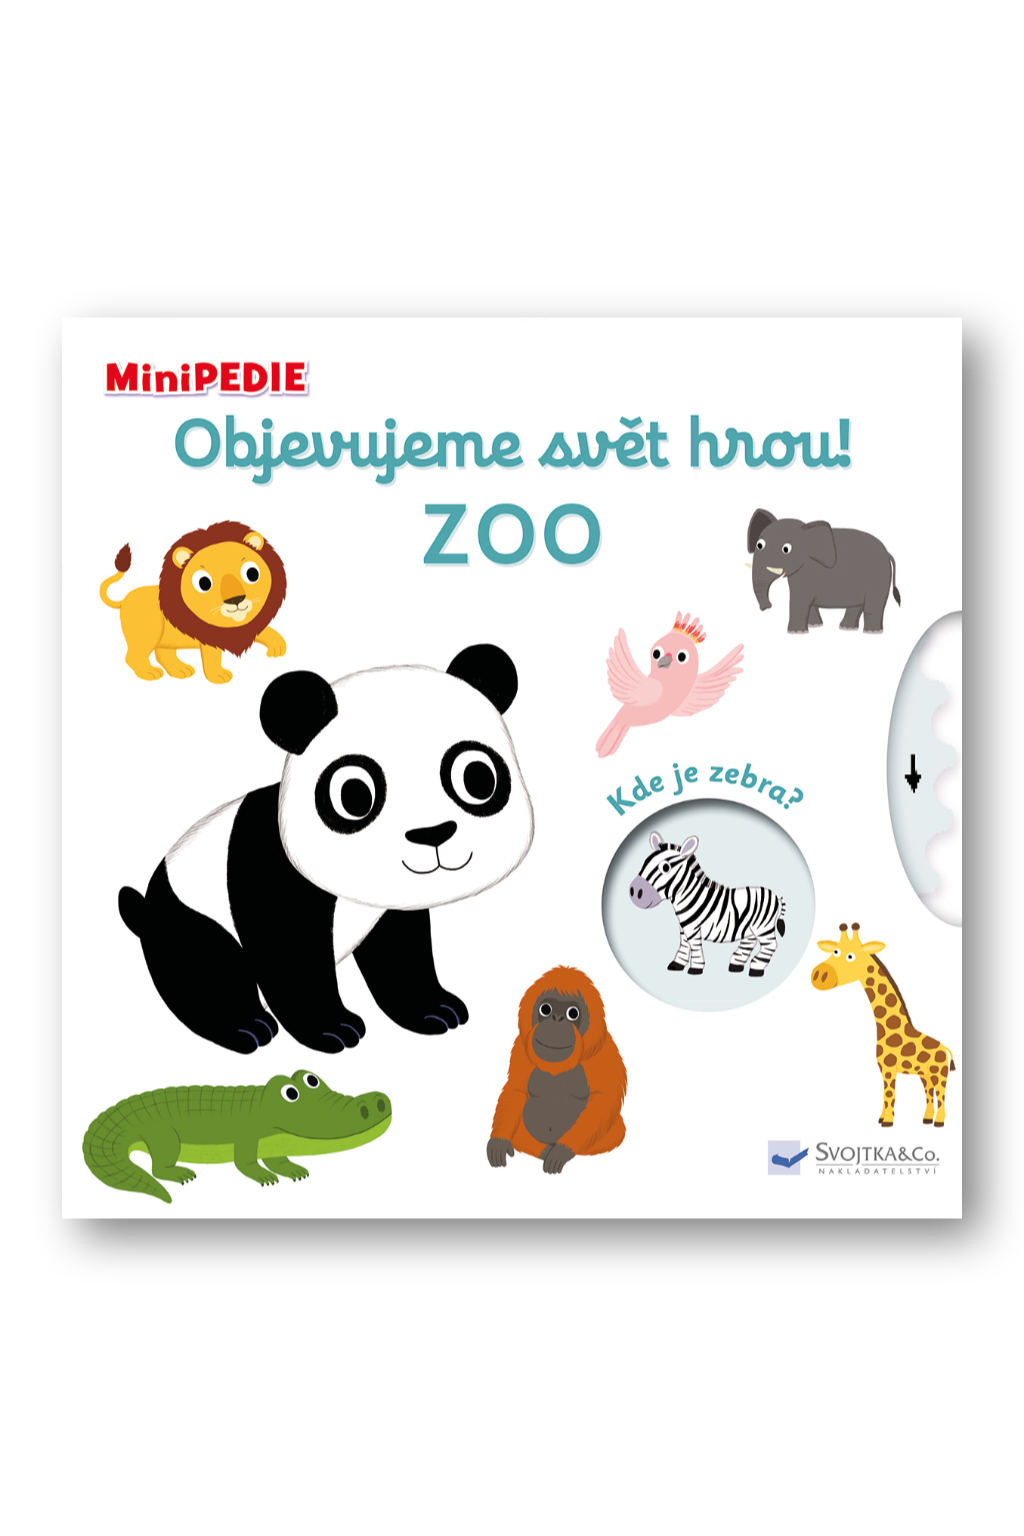 MiniPEDIE – Objevujeme svět! Zoo Nathalie Choux